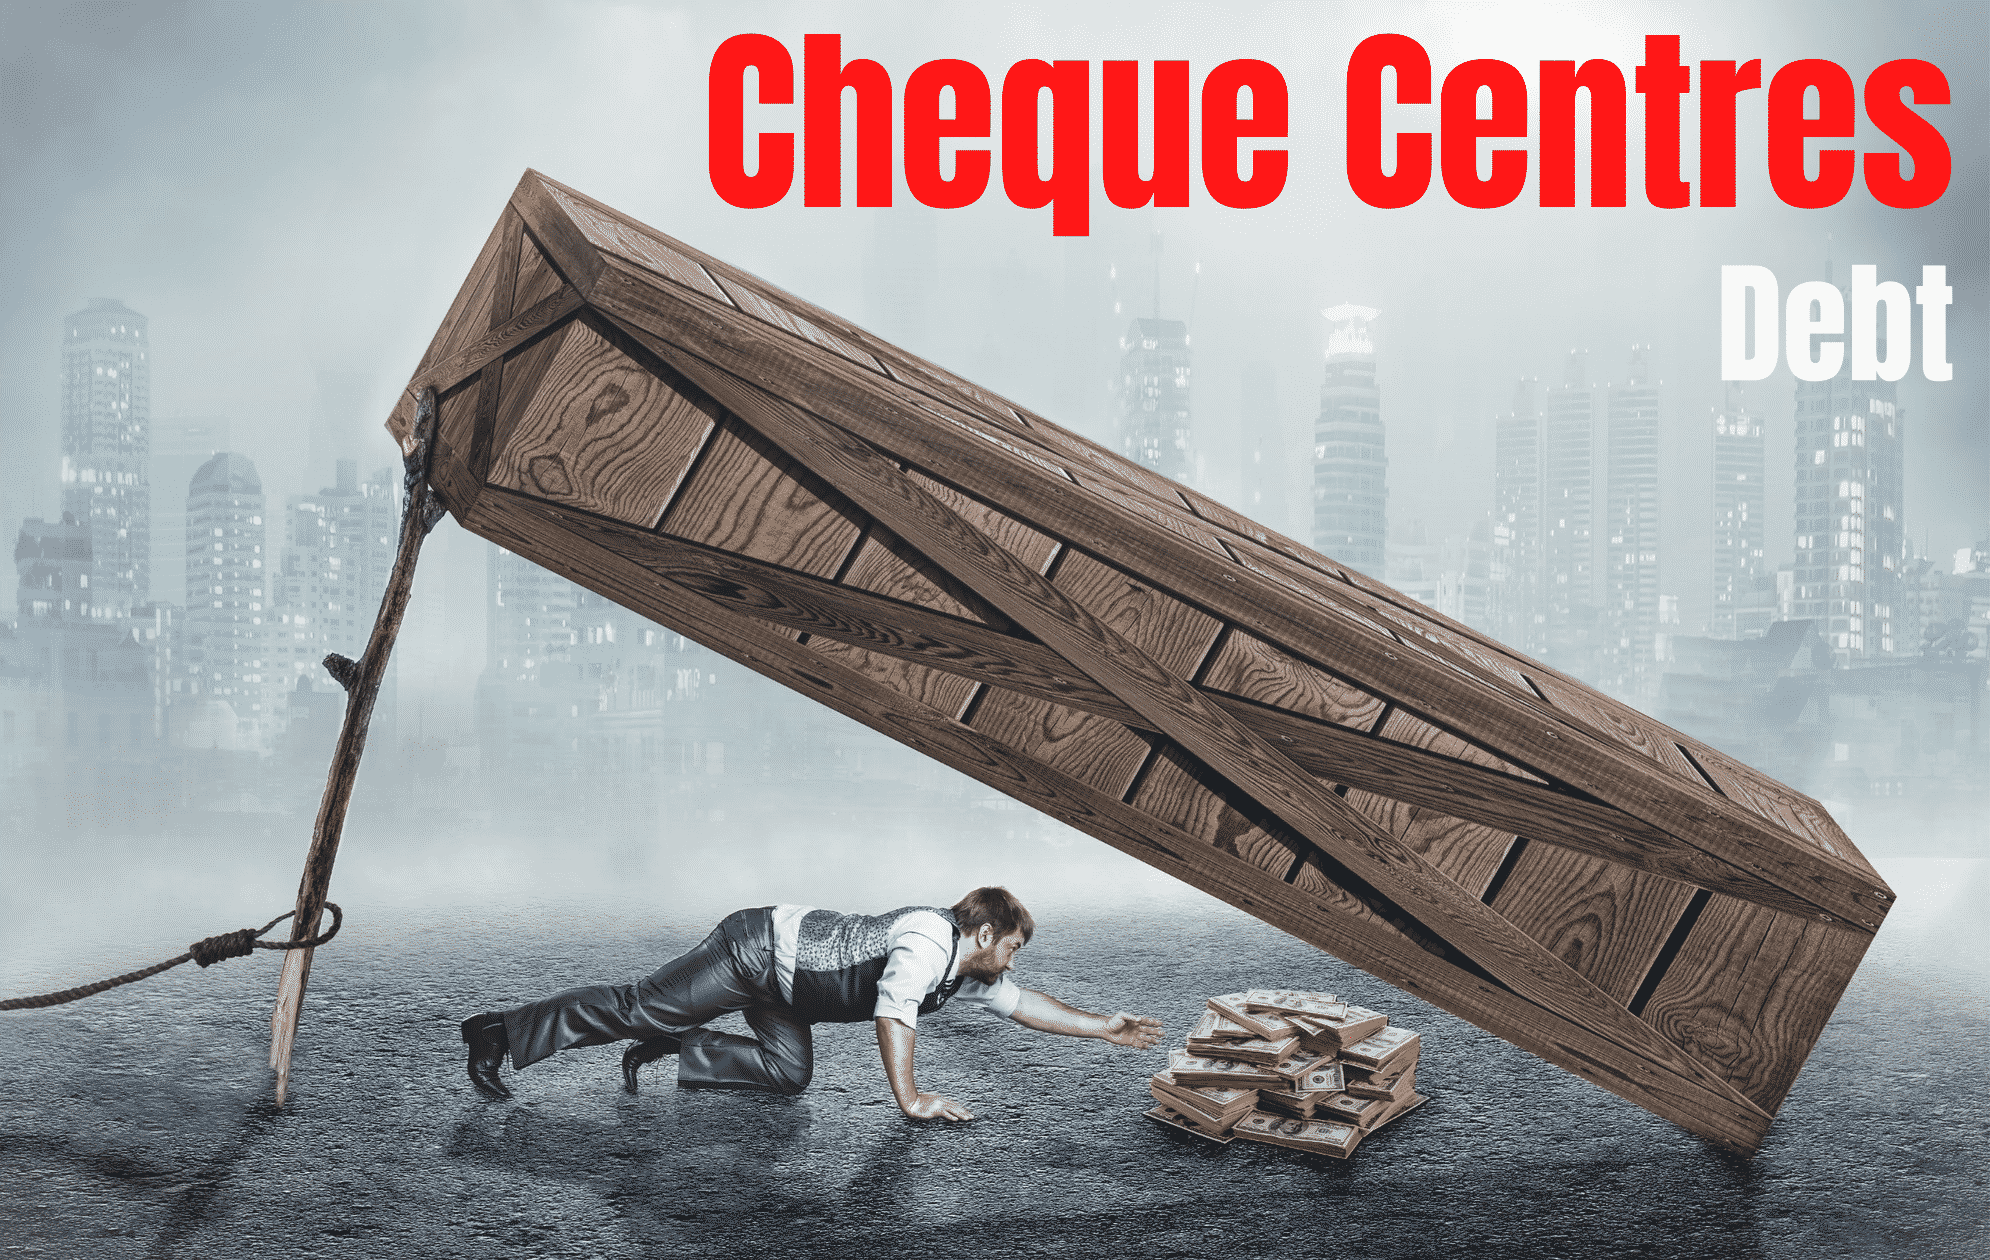 cheque-centres-debt